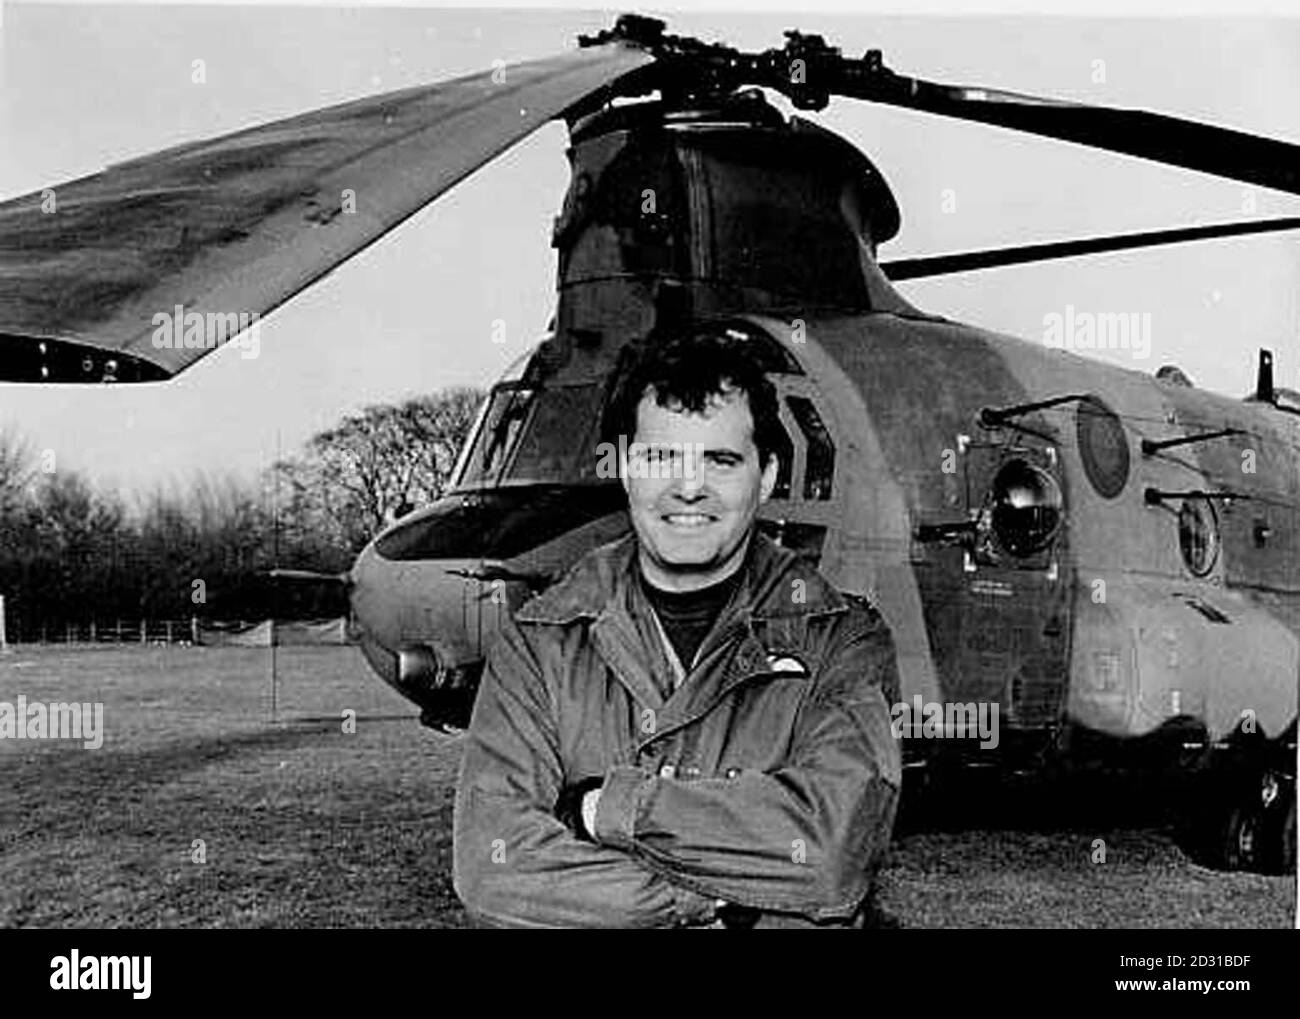 Il tenente di volo Rick Cook, uno dei due piloti che sono morti nel crollo dell'elicottero Chinook sul Mull of Kintyre, nel 1994. Lord Chalfont ha chiesto alla Camera dei Lord di avviare un'inchiesta su tutti gli aspetti del crollo *....che ha causato 29 vite, tra cui 25 esperti leader di intelligence dell'Irlanda del Nord. 25/5/01: Andy Fairfield, il contestante sopravvissuto, ha detto che avrebbe donato i suoi 1 milione di vincite per cancellare il nome di Rick Cook con il quale era stato vicino amici e servito insieme in Germania e nelle Falklands quando lavoravano per le forze speciali. MR Cook è stato trovato GU Foto Stock